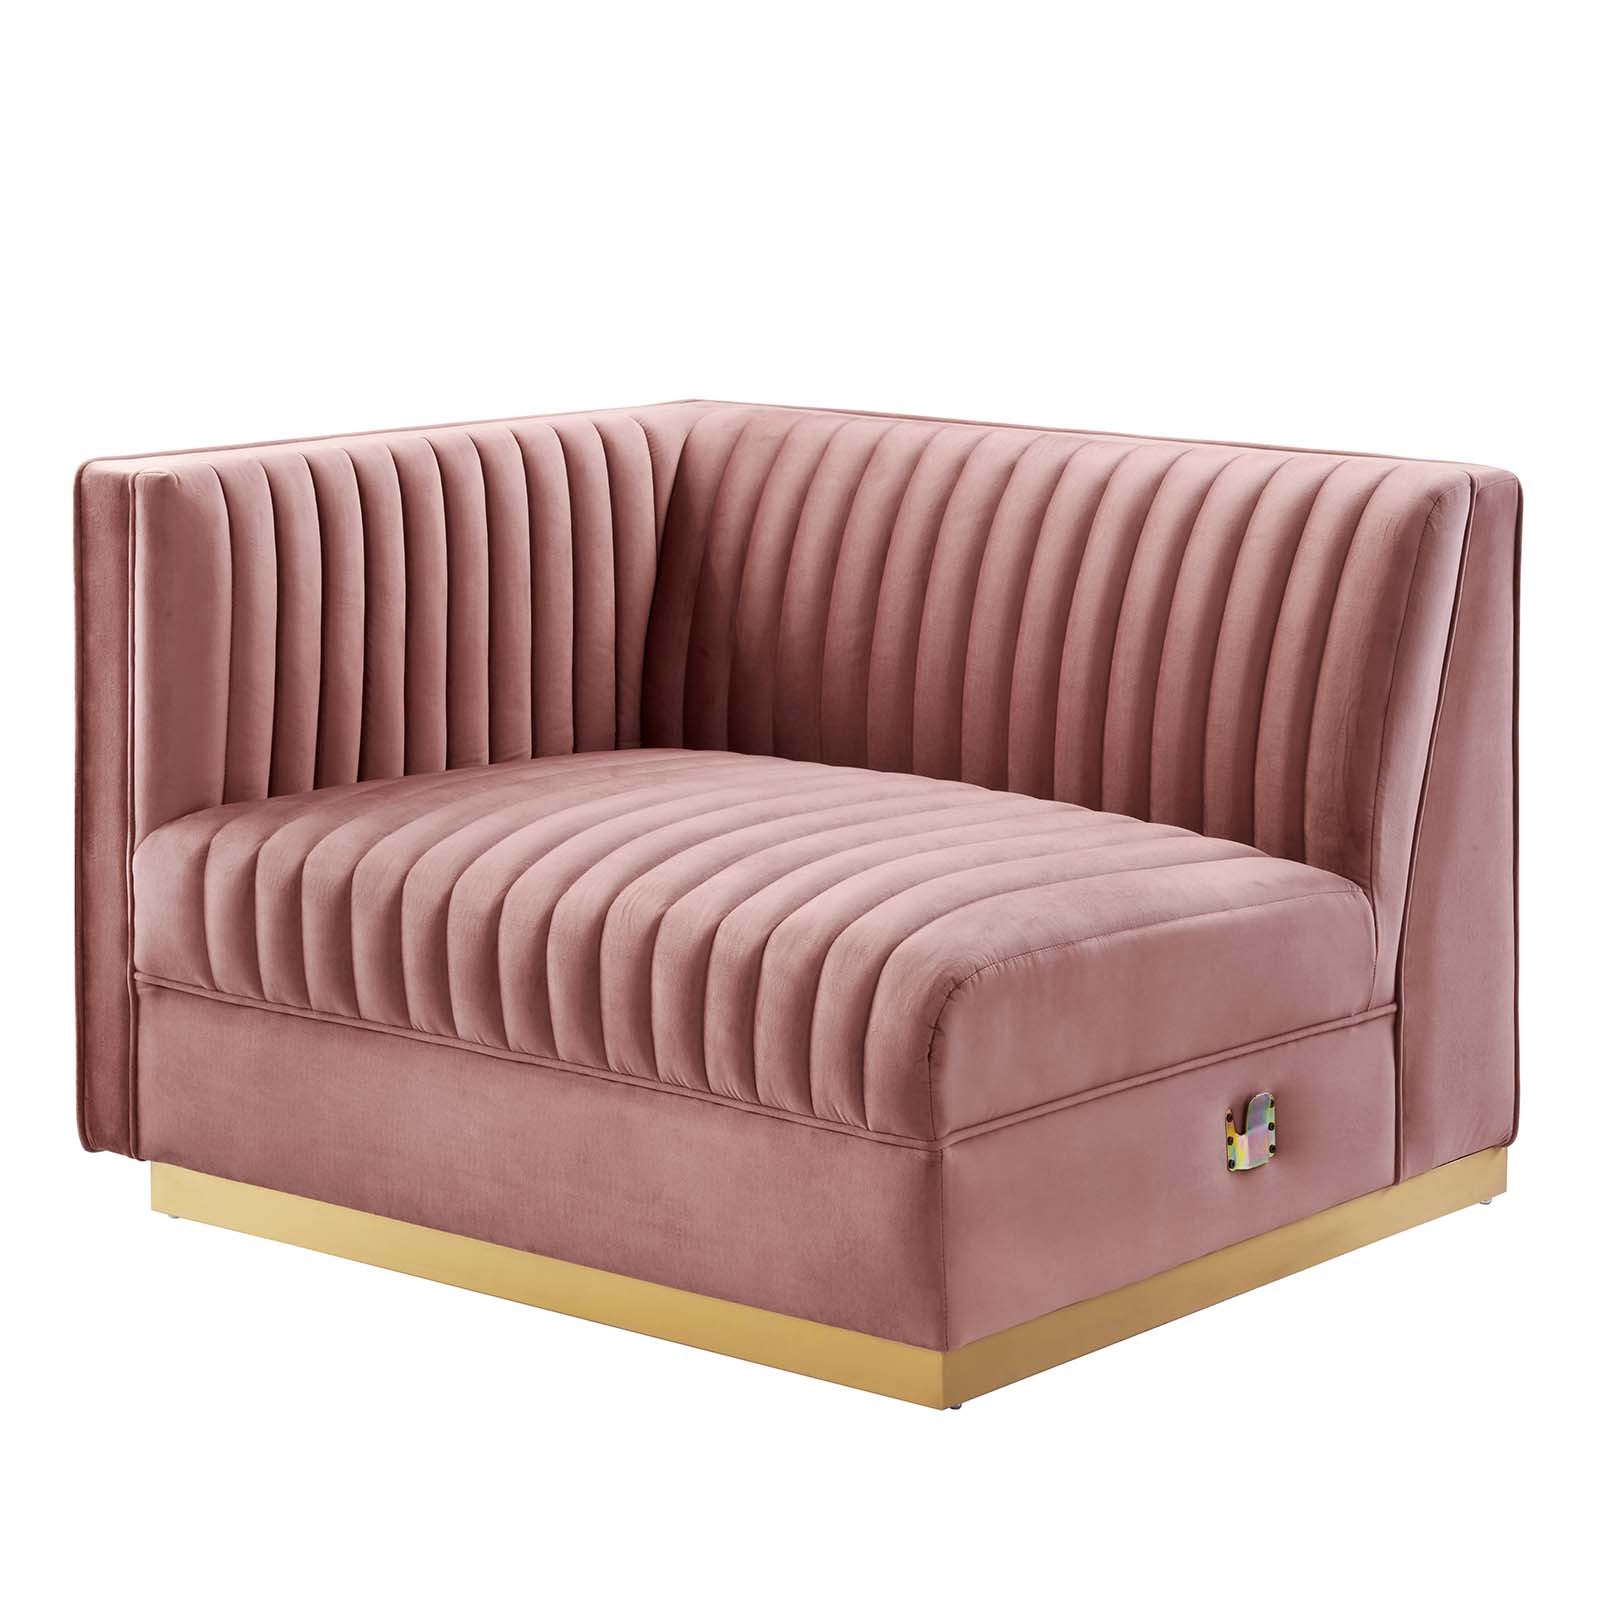 Sanguine Channel Tufted Performance Velvet Modular Sectional Sofa Left-Arm Chair - East Shore Modern Home Furnishings